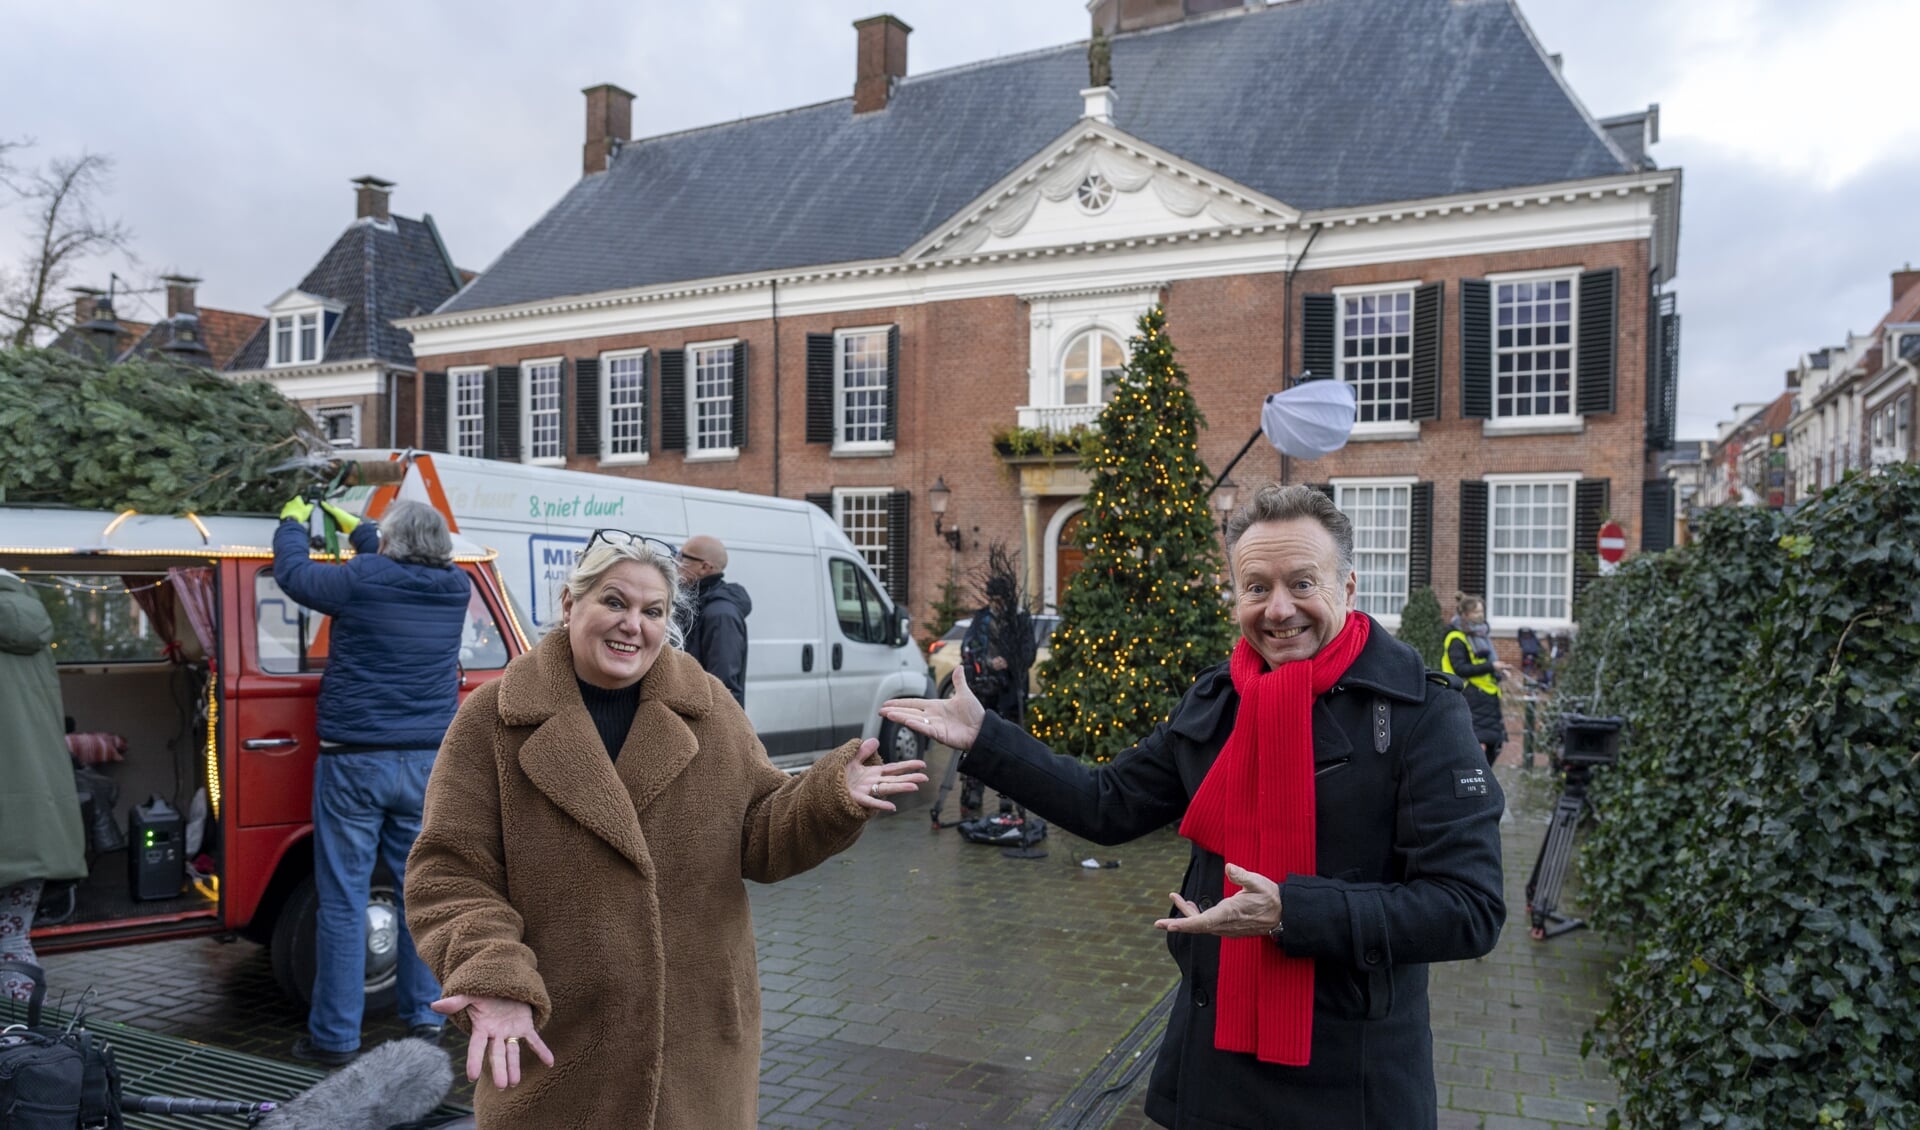 Dokkumer Annelies van der Meer en presentator Joris Linssen begroeten elkaar hartelijk terwijl de crew de set gereed maakt voor de opnames van Joris' Kerstboom.